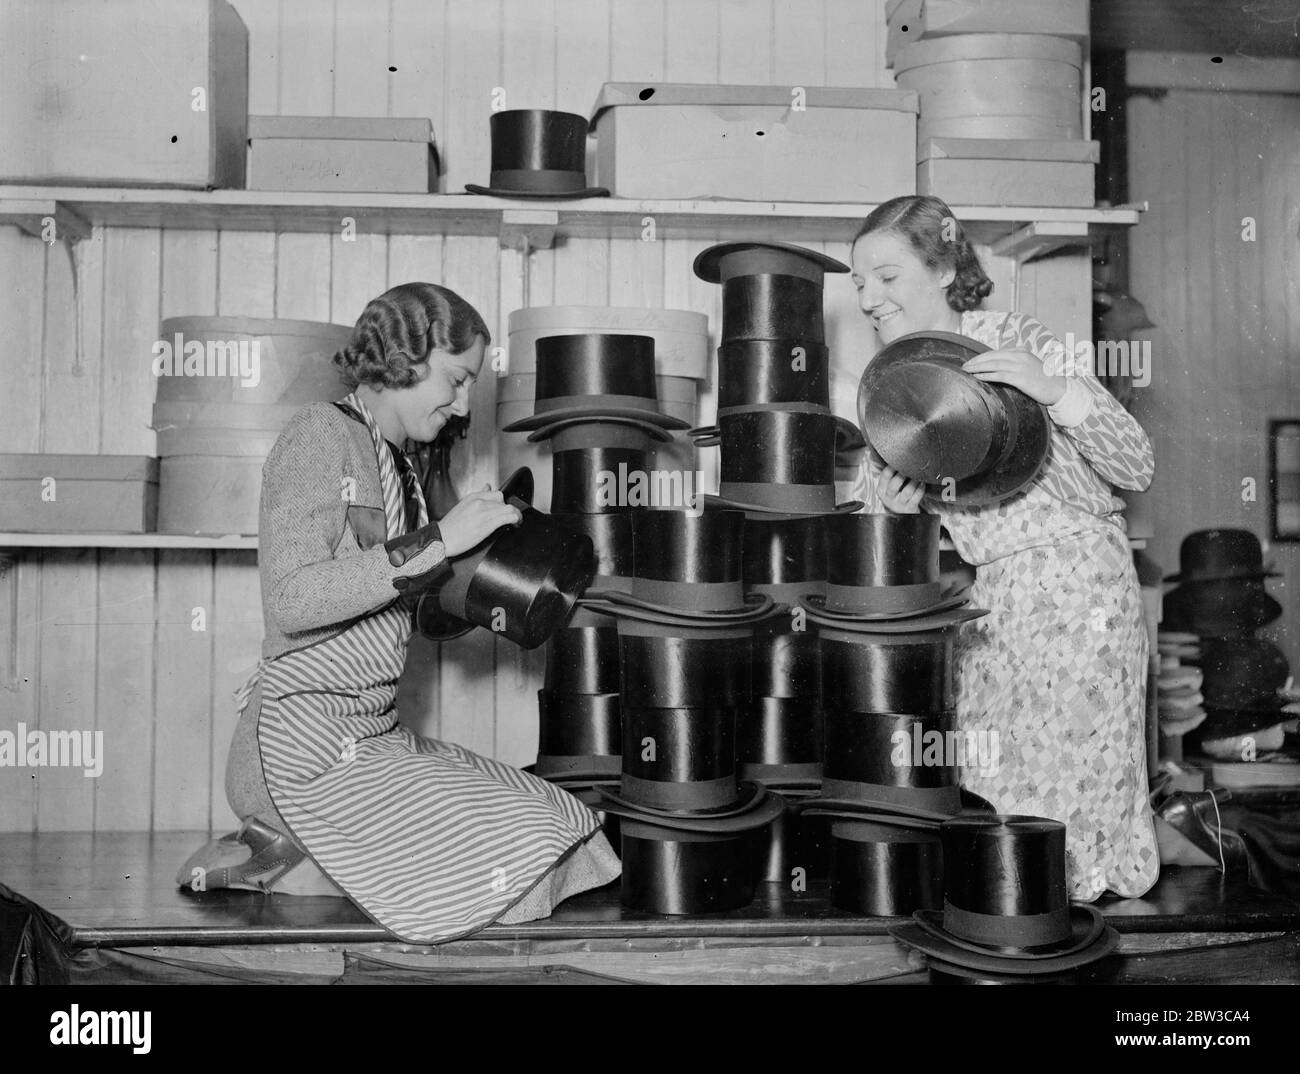 La corsa all'acquisto dei cappelli di seta per il matrimonio reale tiene le fabbriche di Londra occupate. 5 novembre 1934 Foto Stock